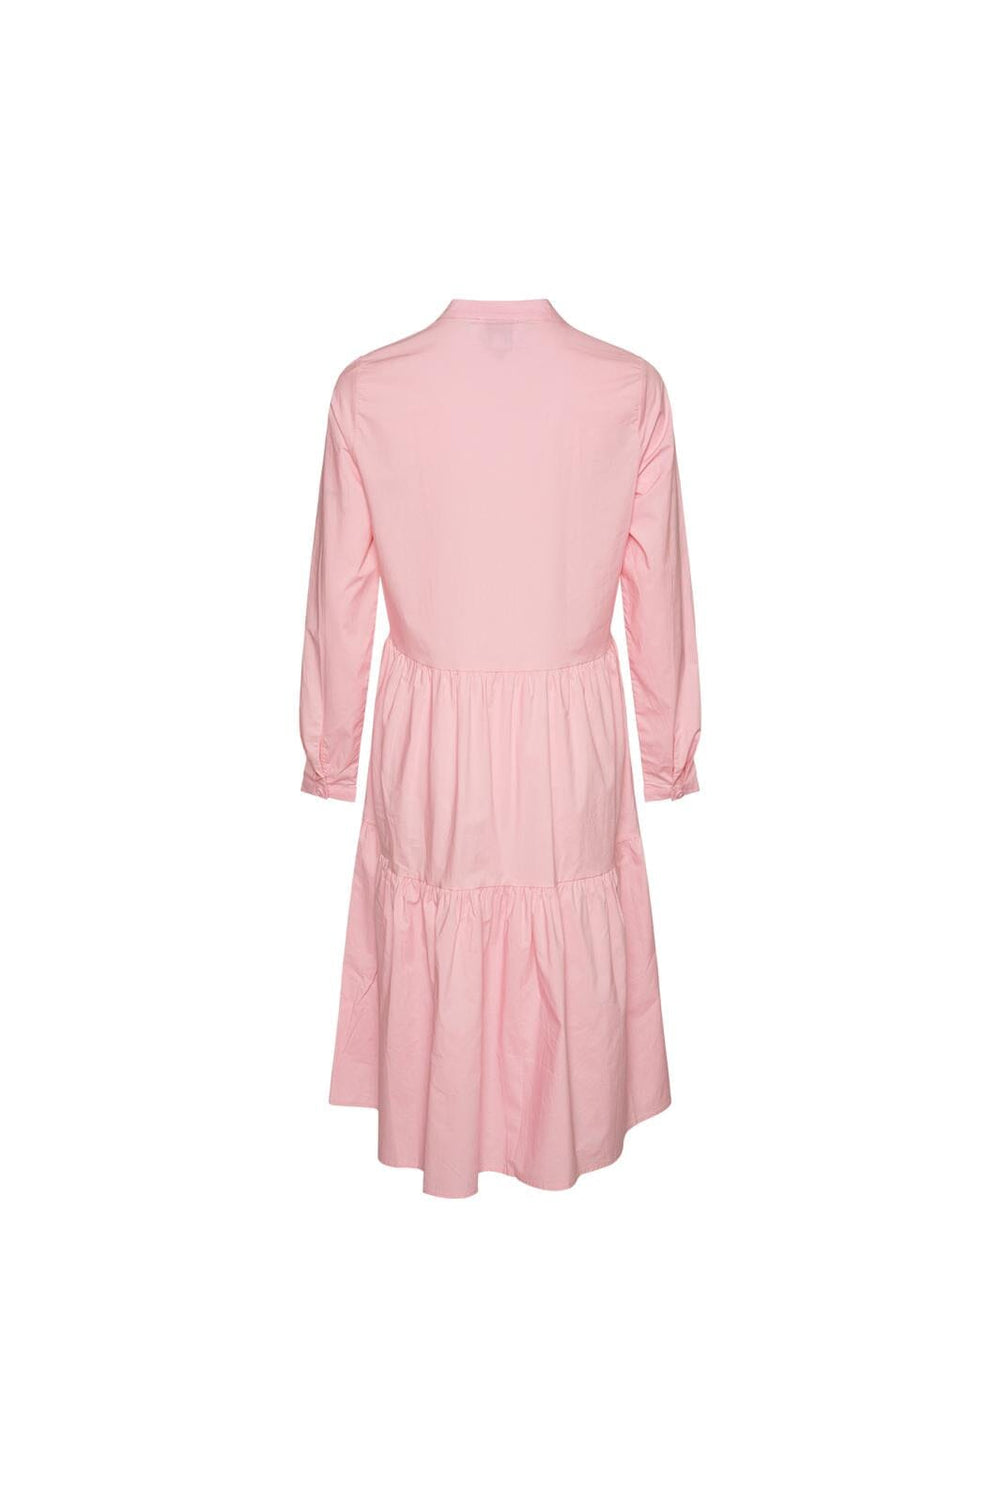 Noella - Lipe Dress - 588 Light Pink